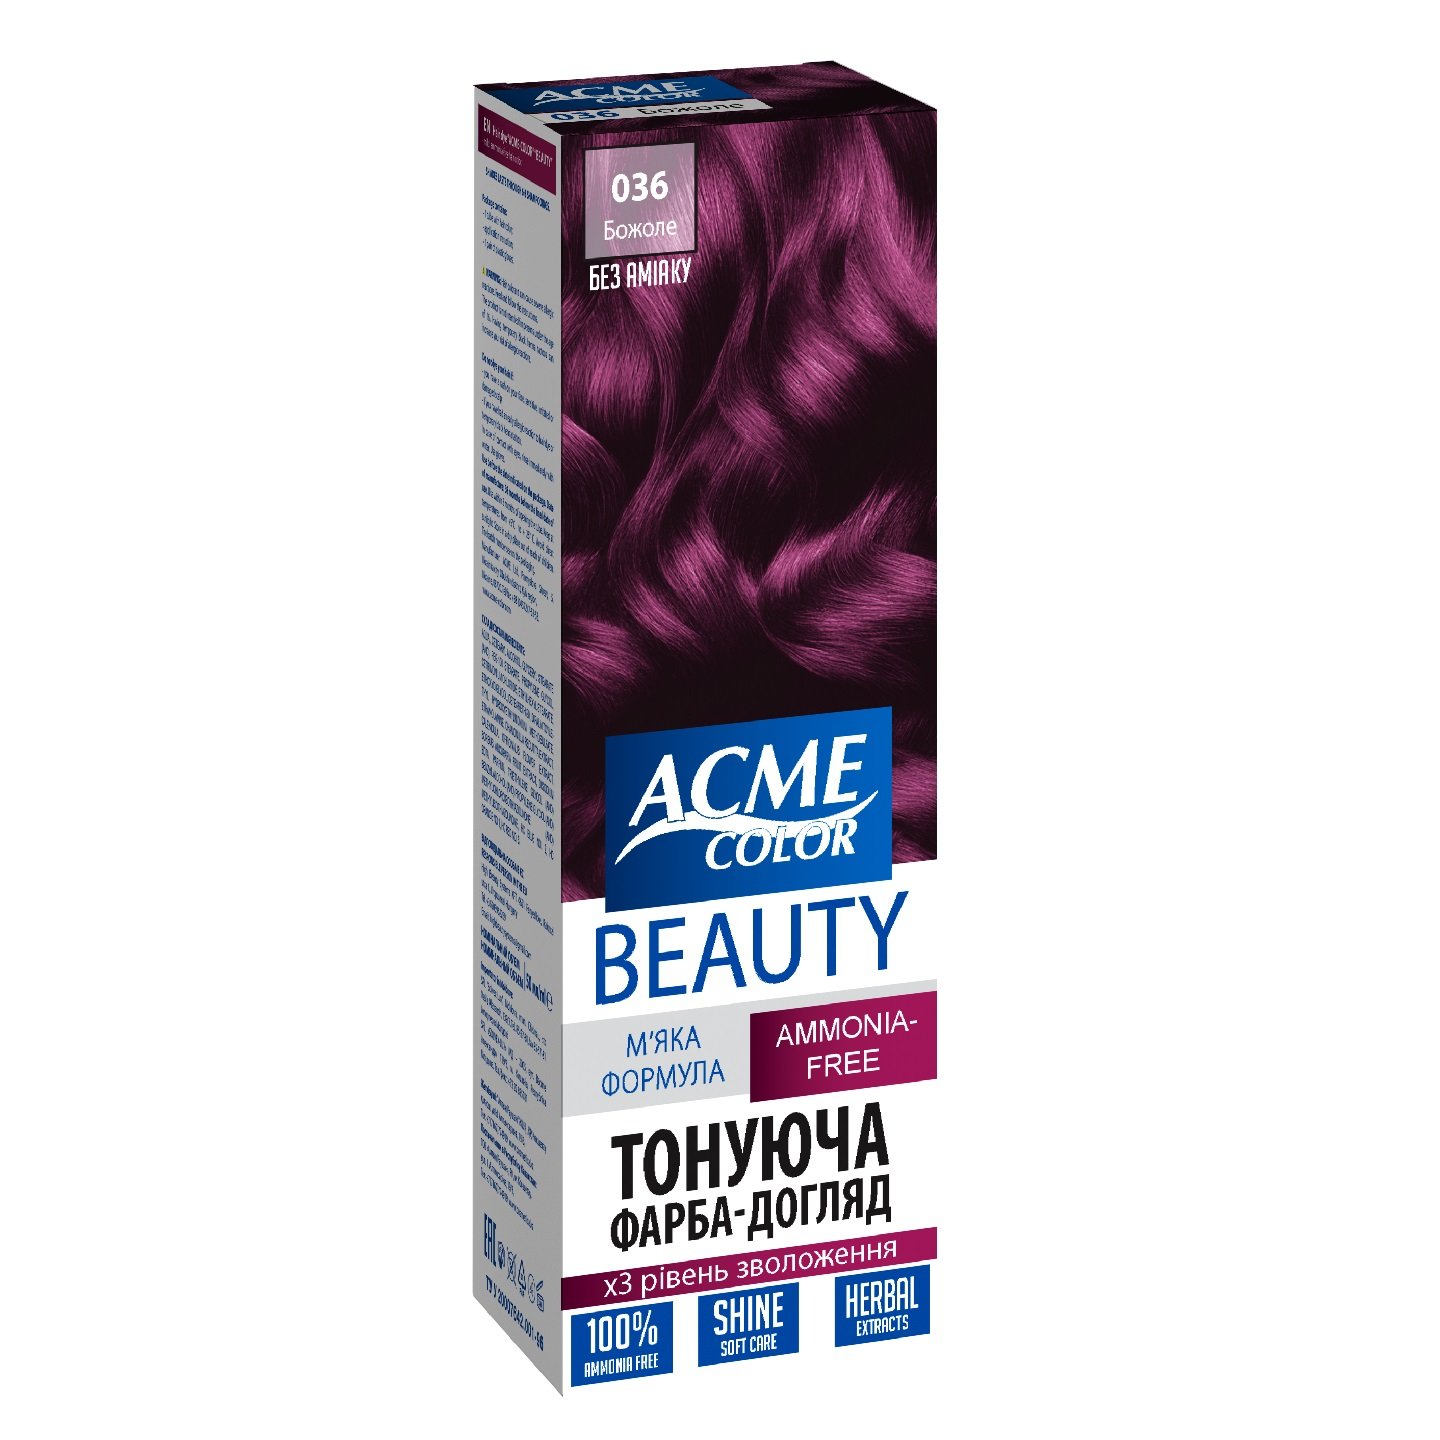 Гель-краска для волос Acme-color Beauty, оттенок 036 (Божоле), 69 г - фото 1